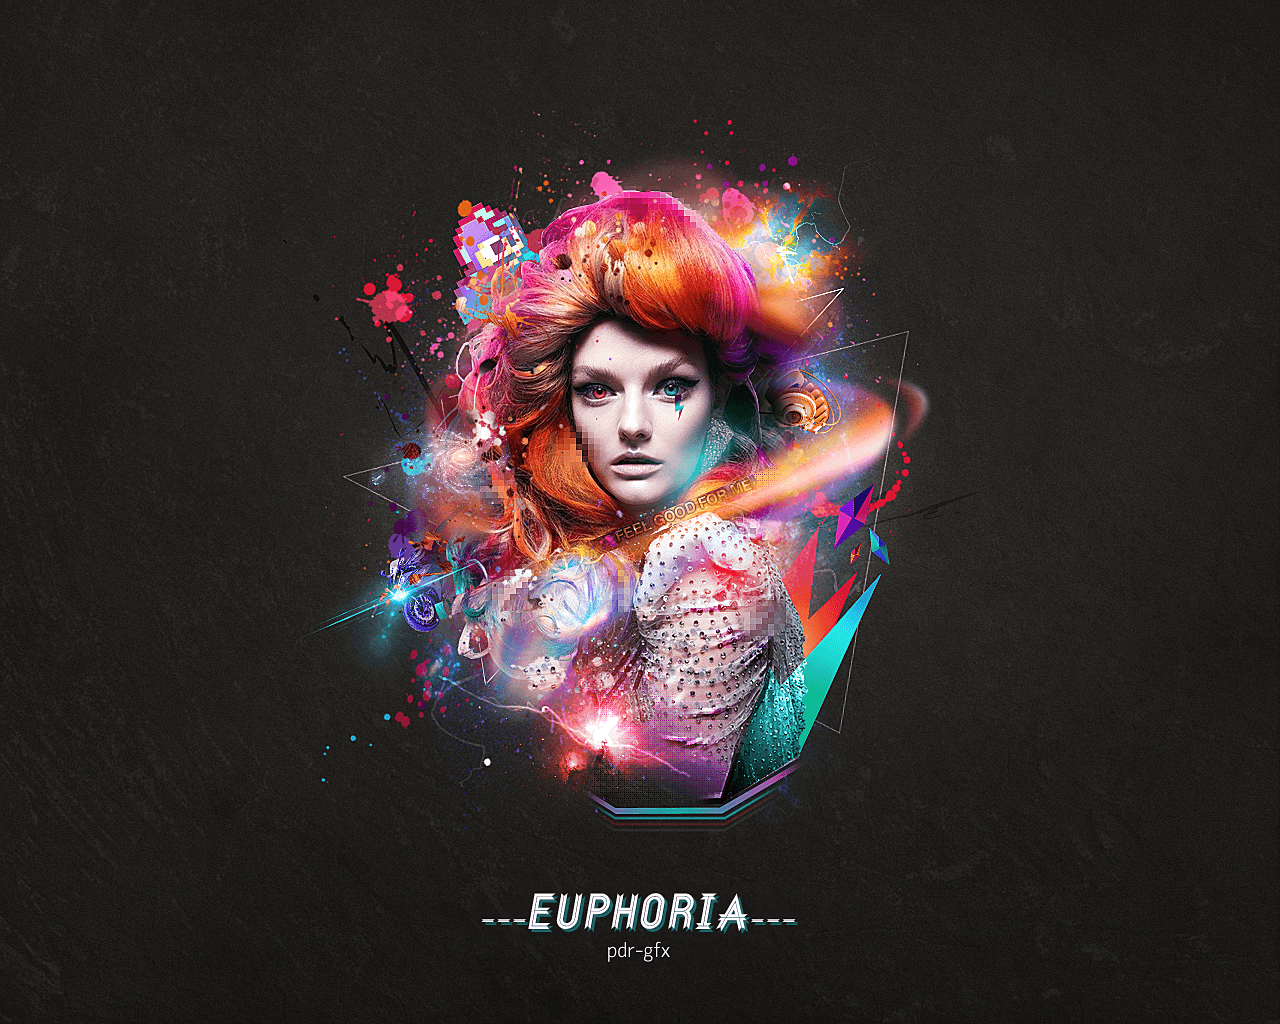 Euphoria Wallpaper + PSD By Crazed Artist